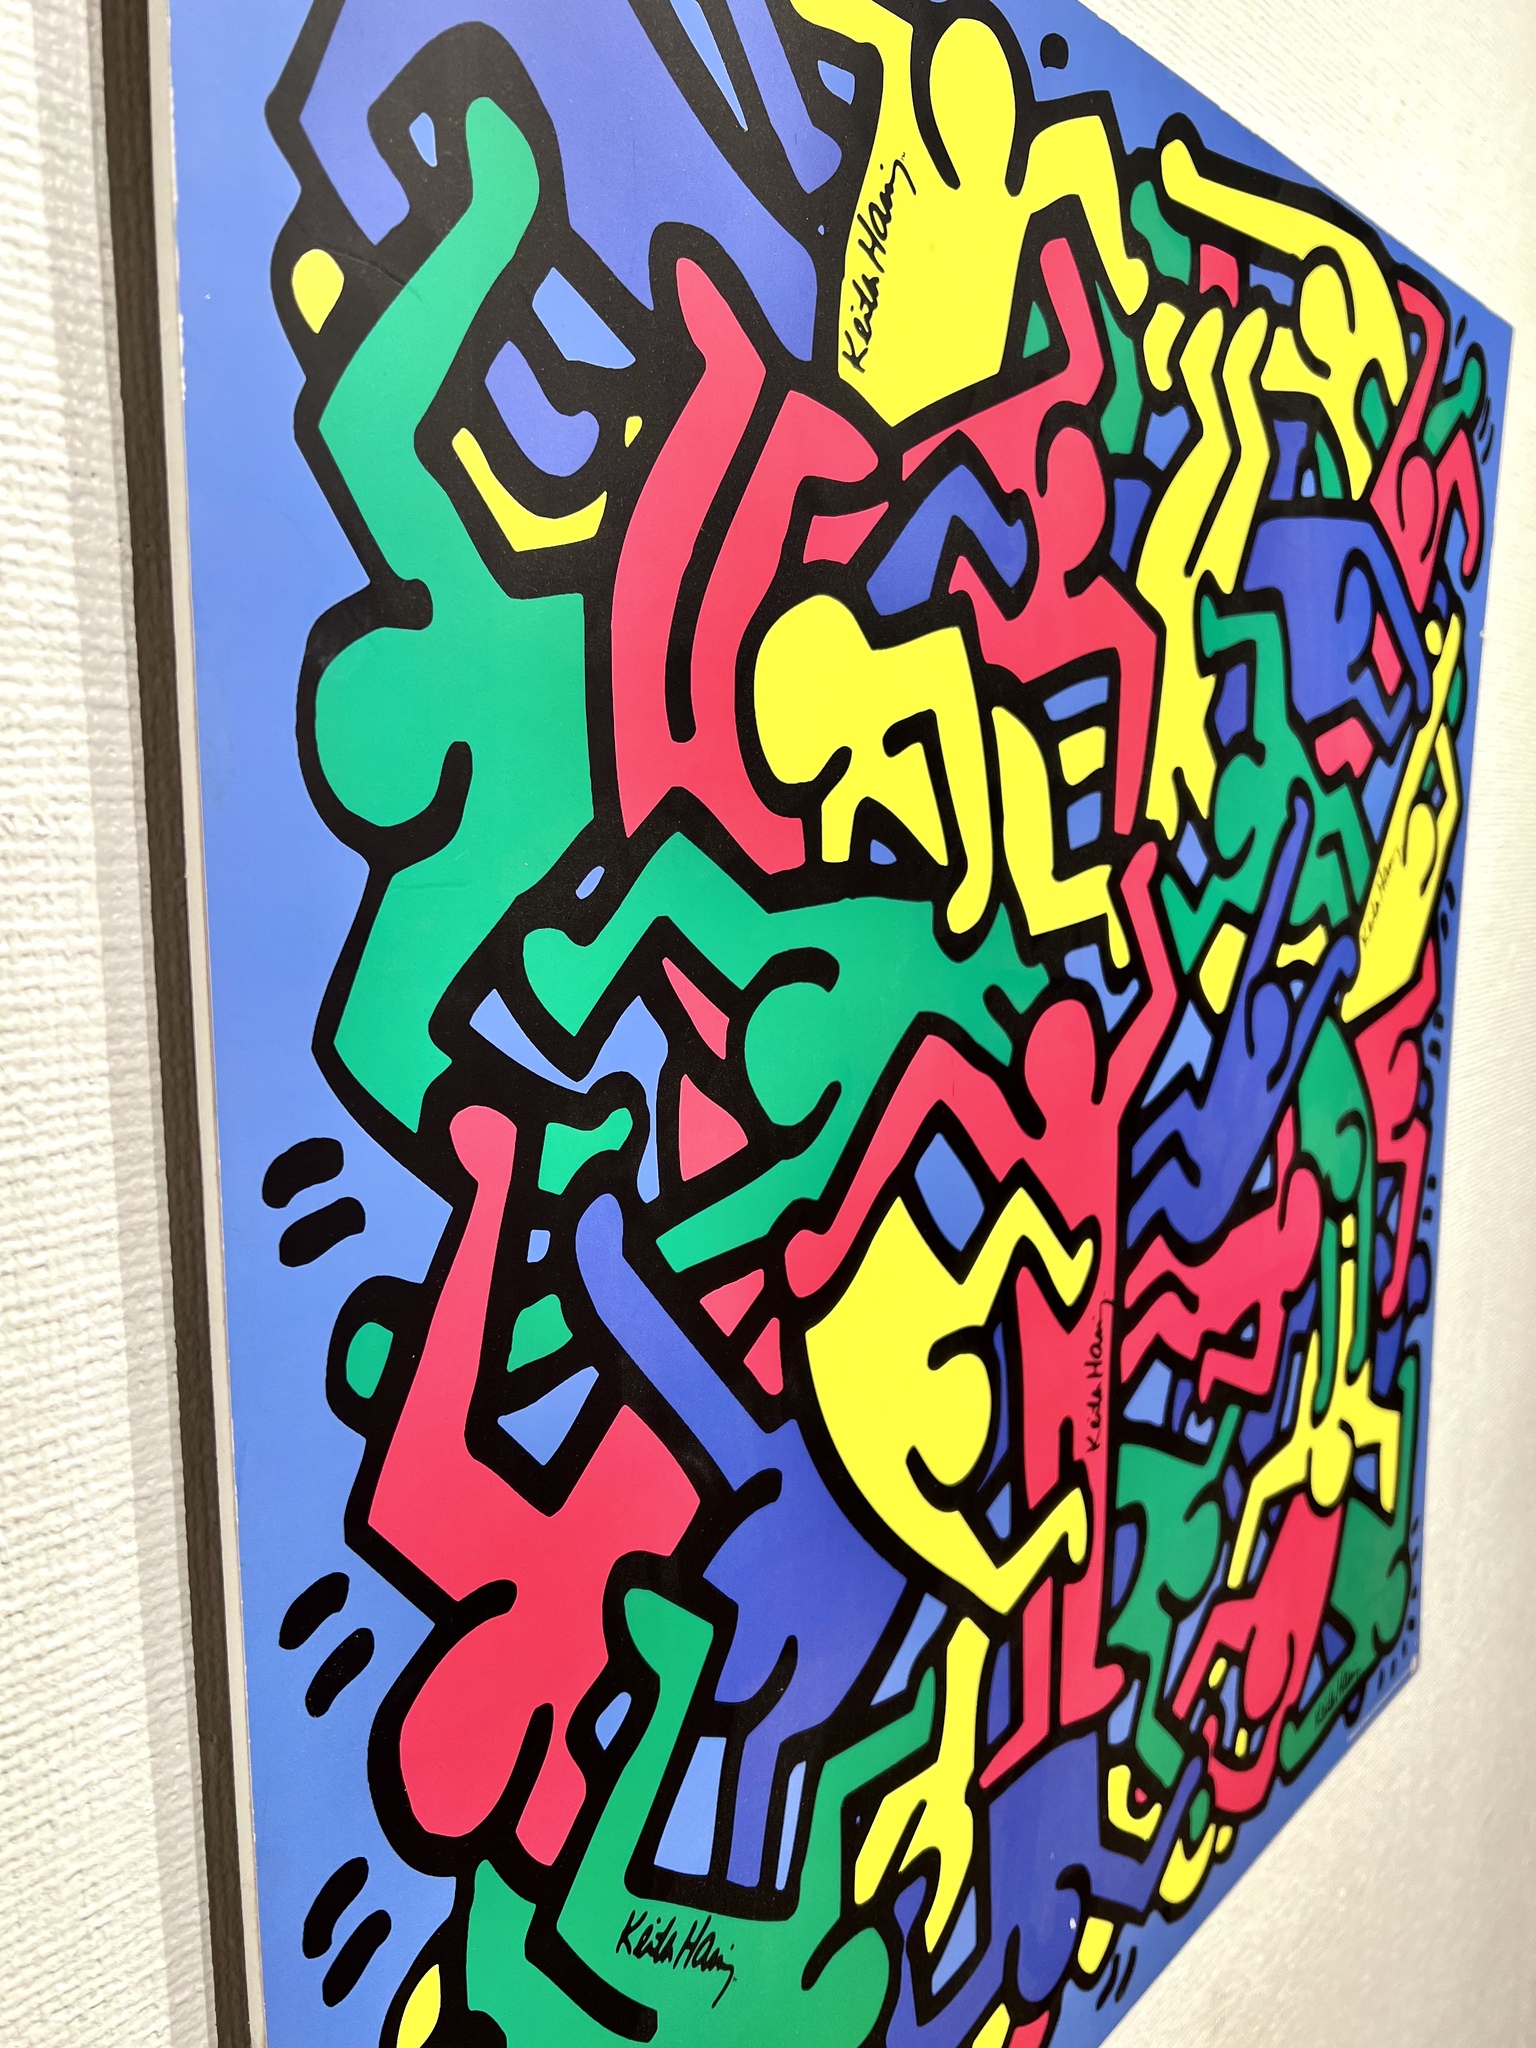 "Untitled" Affisch av Keith Haring på pannå. 78x78 cm